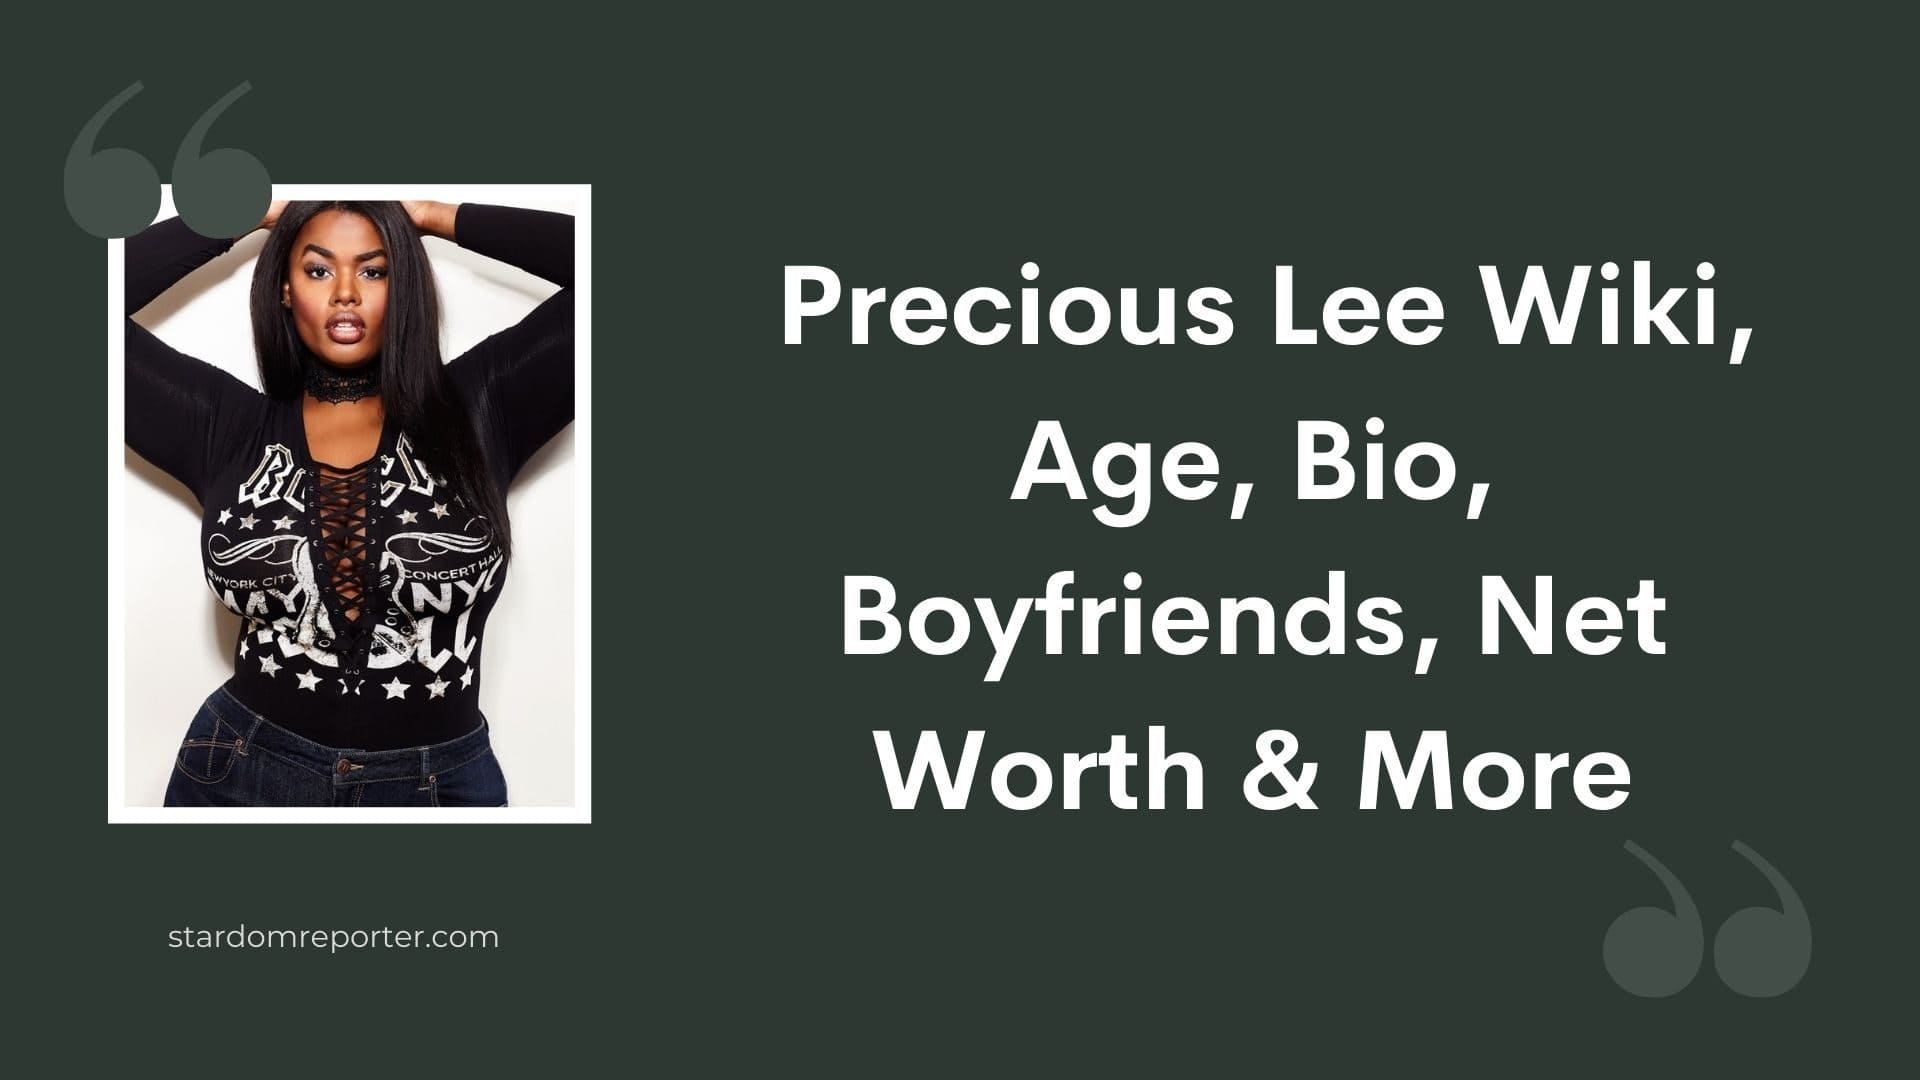 Precious Lee Wiki, Age, Bio, Boyfriends, Net Worth & More - 31